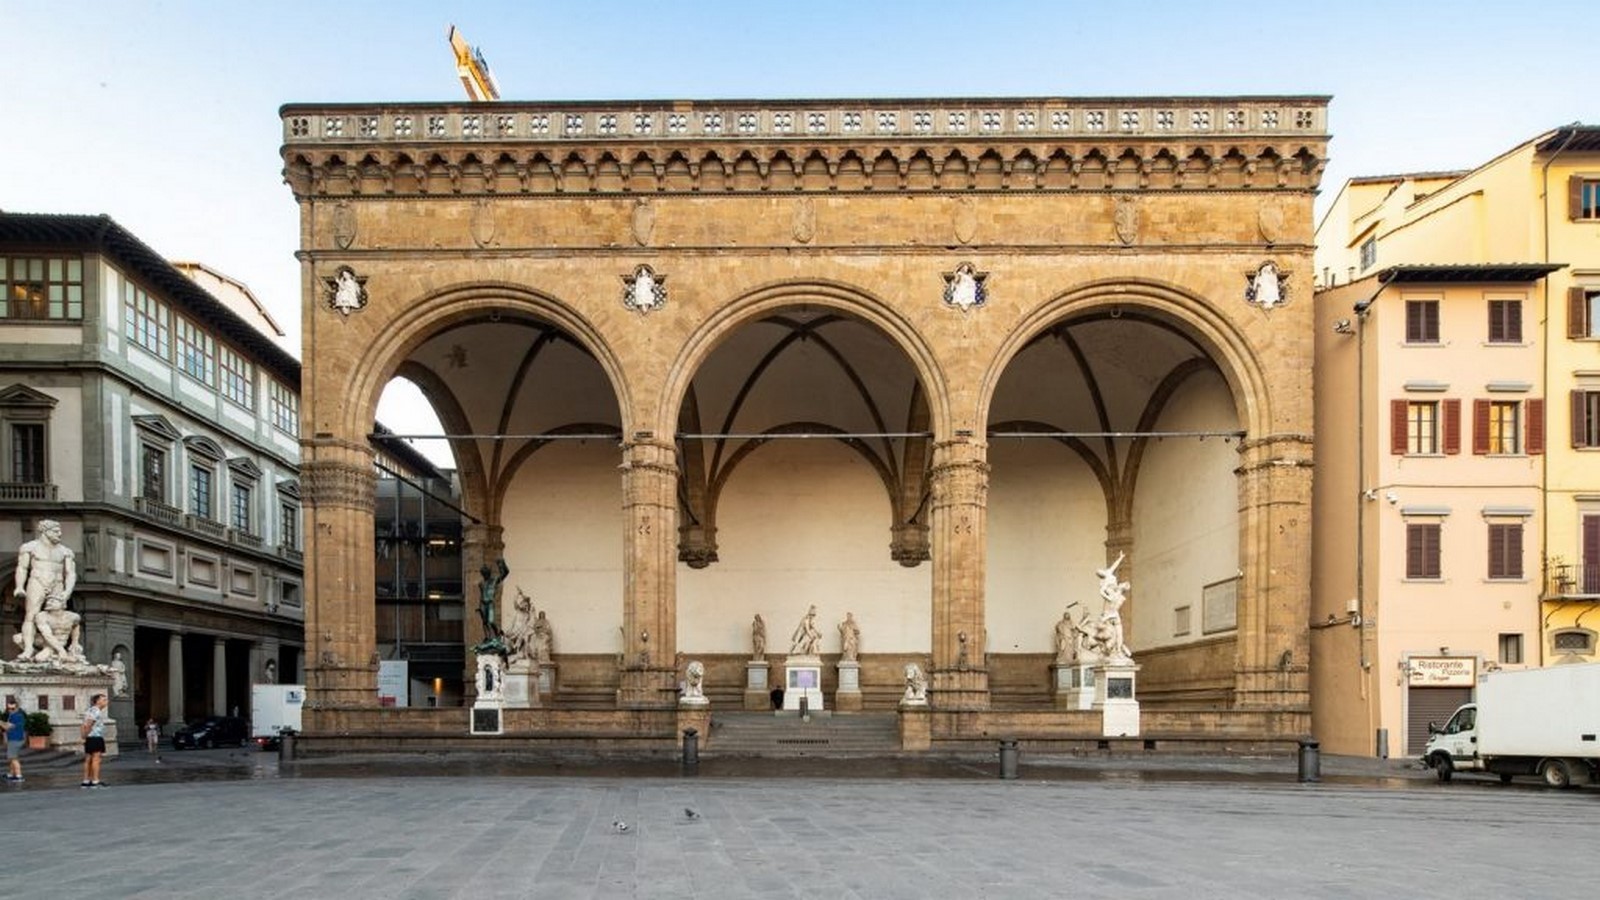 Arquitectura Barroca a través de 10 edificios en Florencia- sheet11